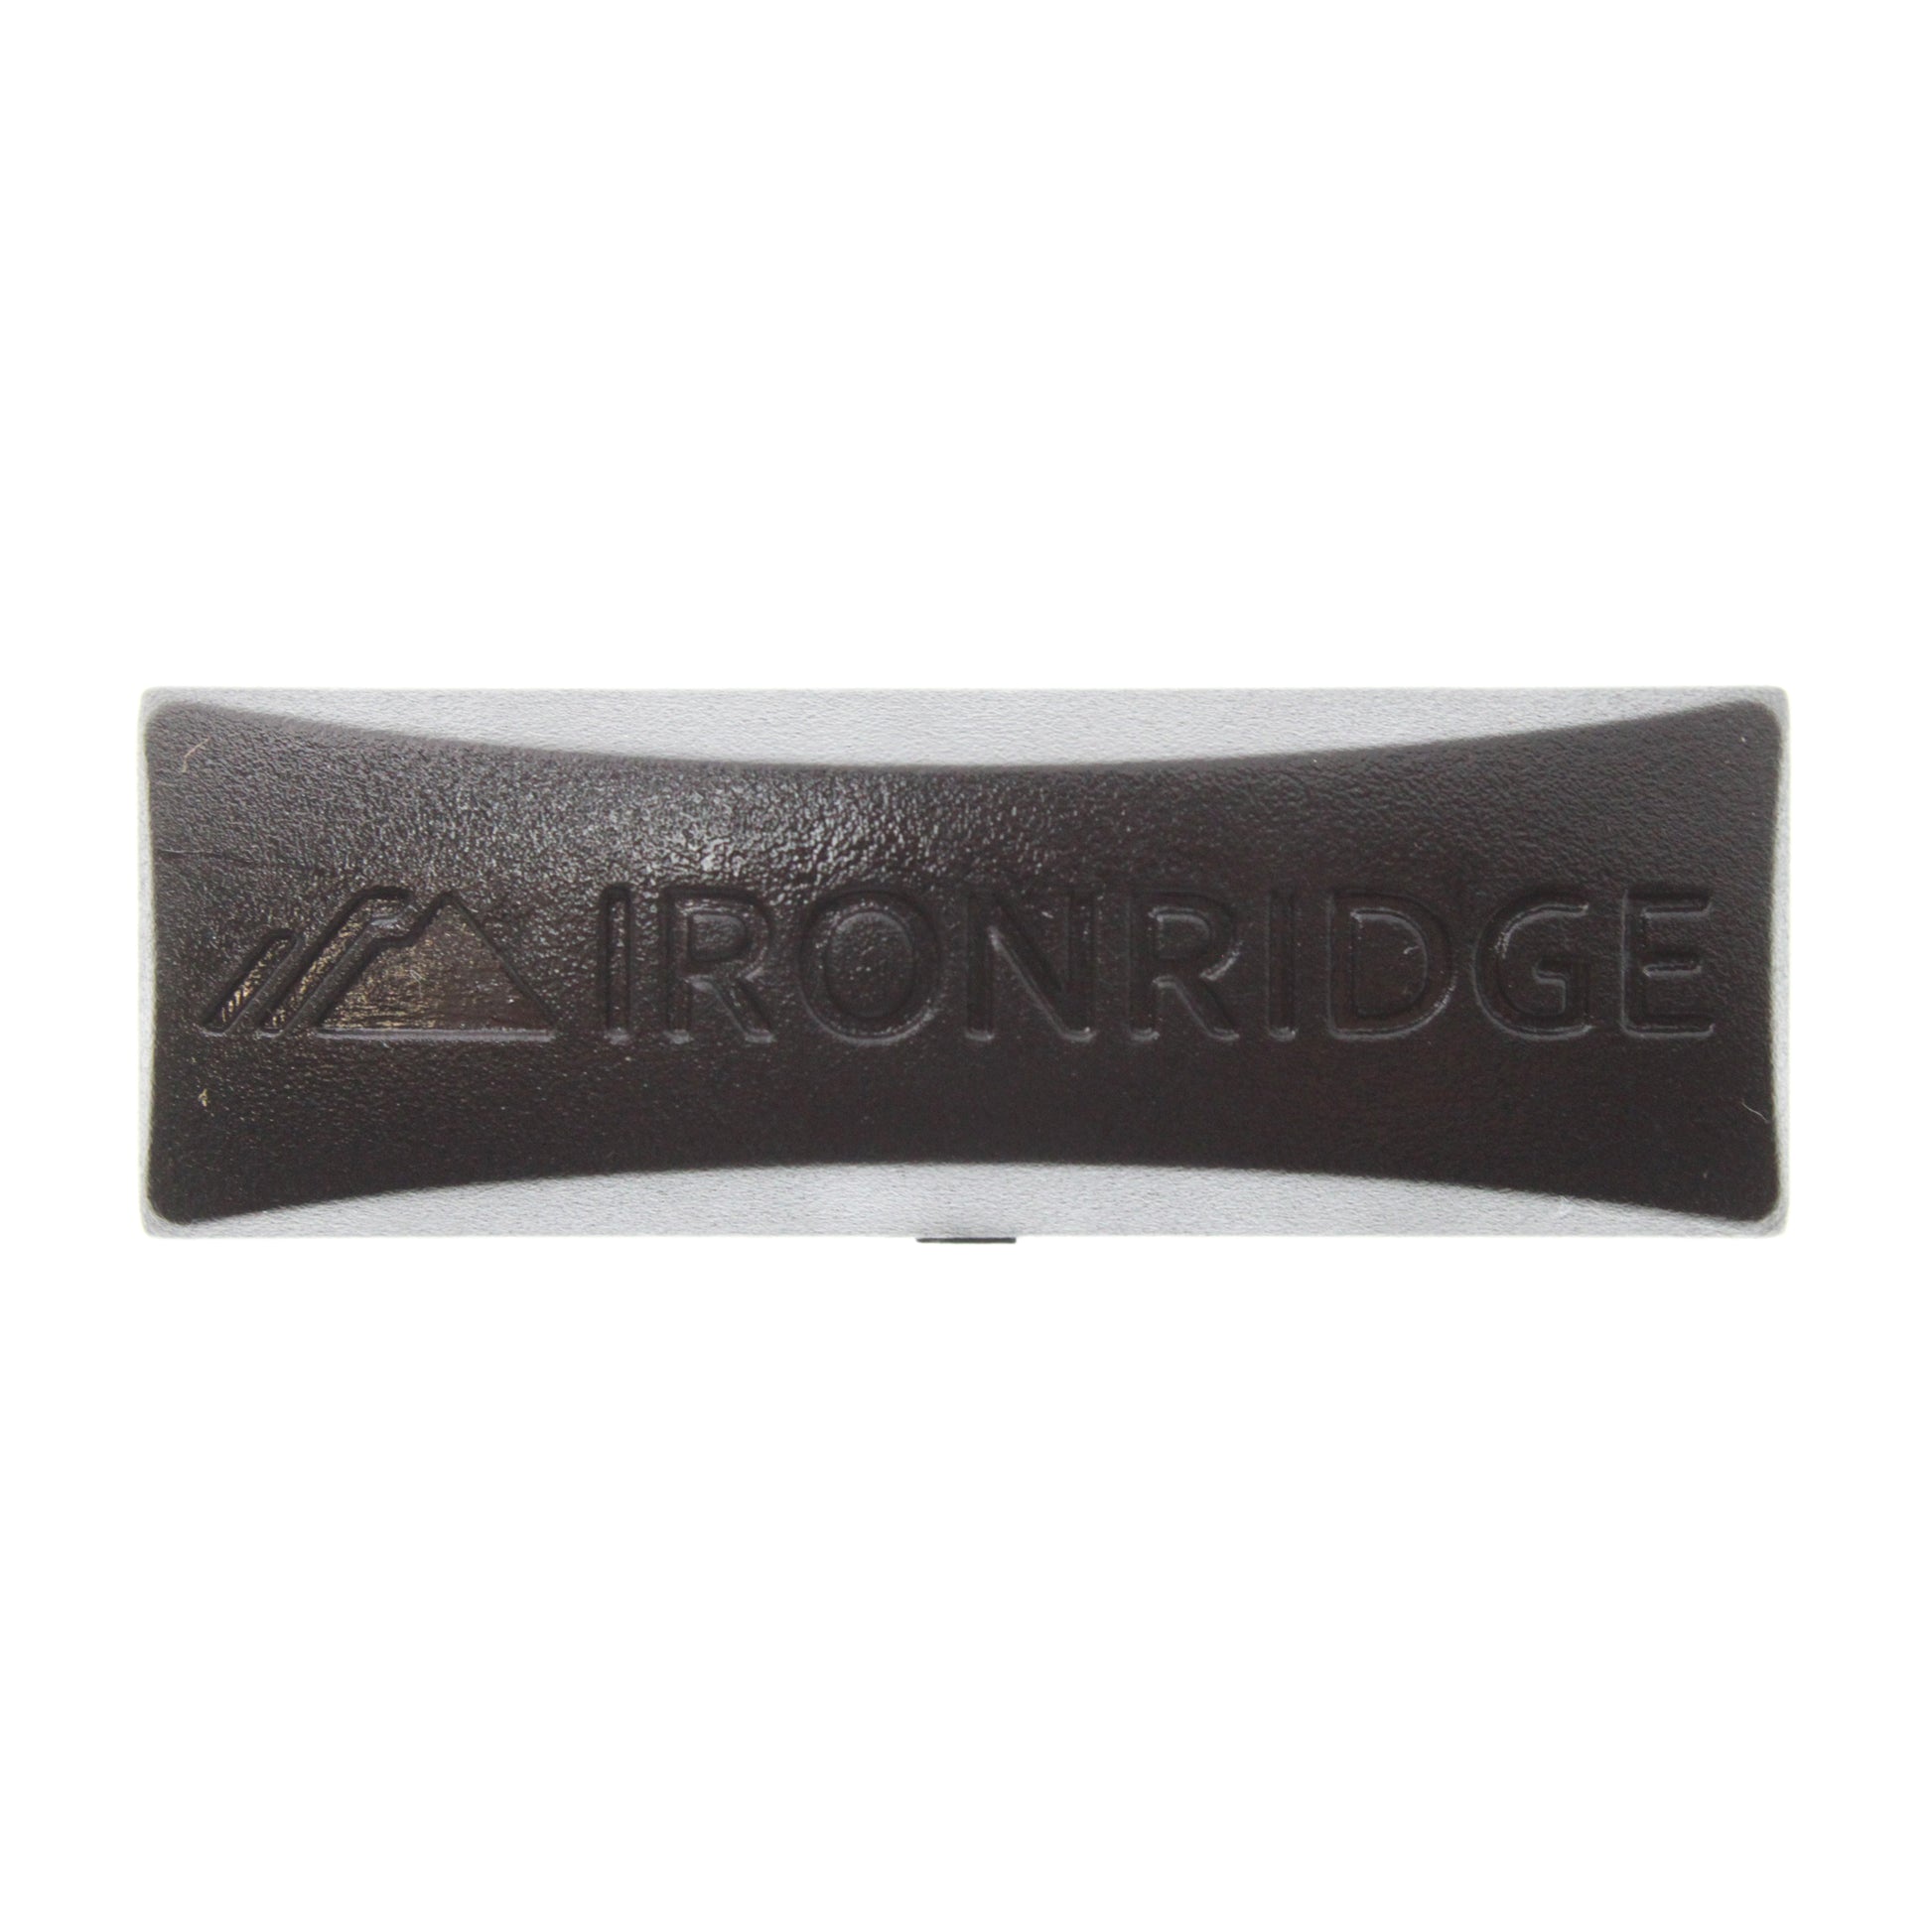 Ironridge 29-4000-088